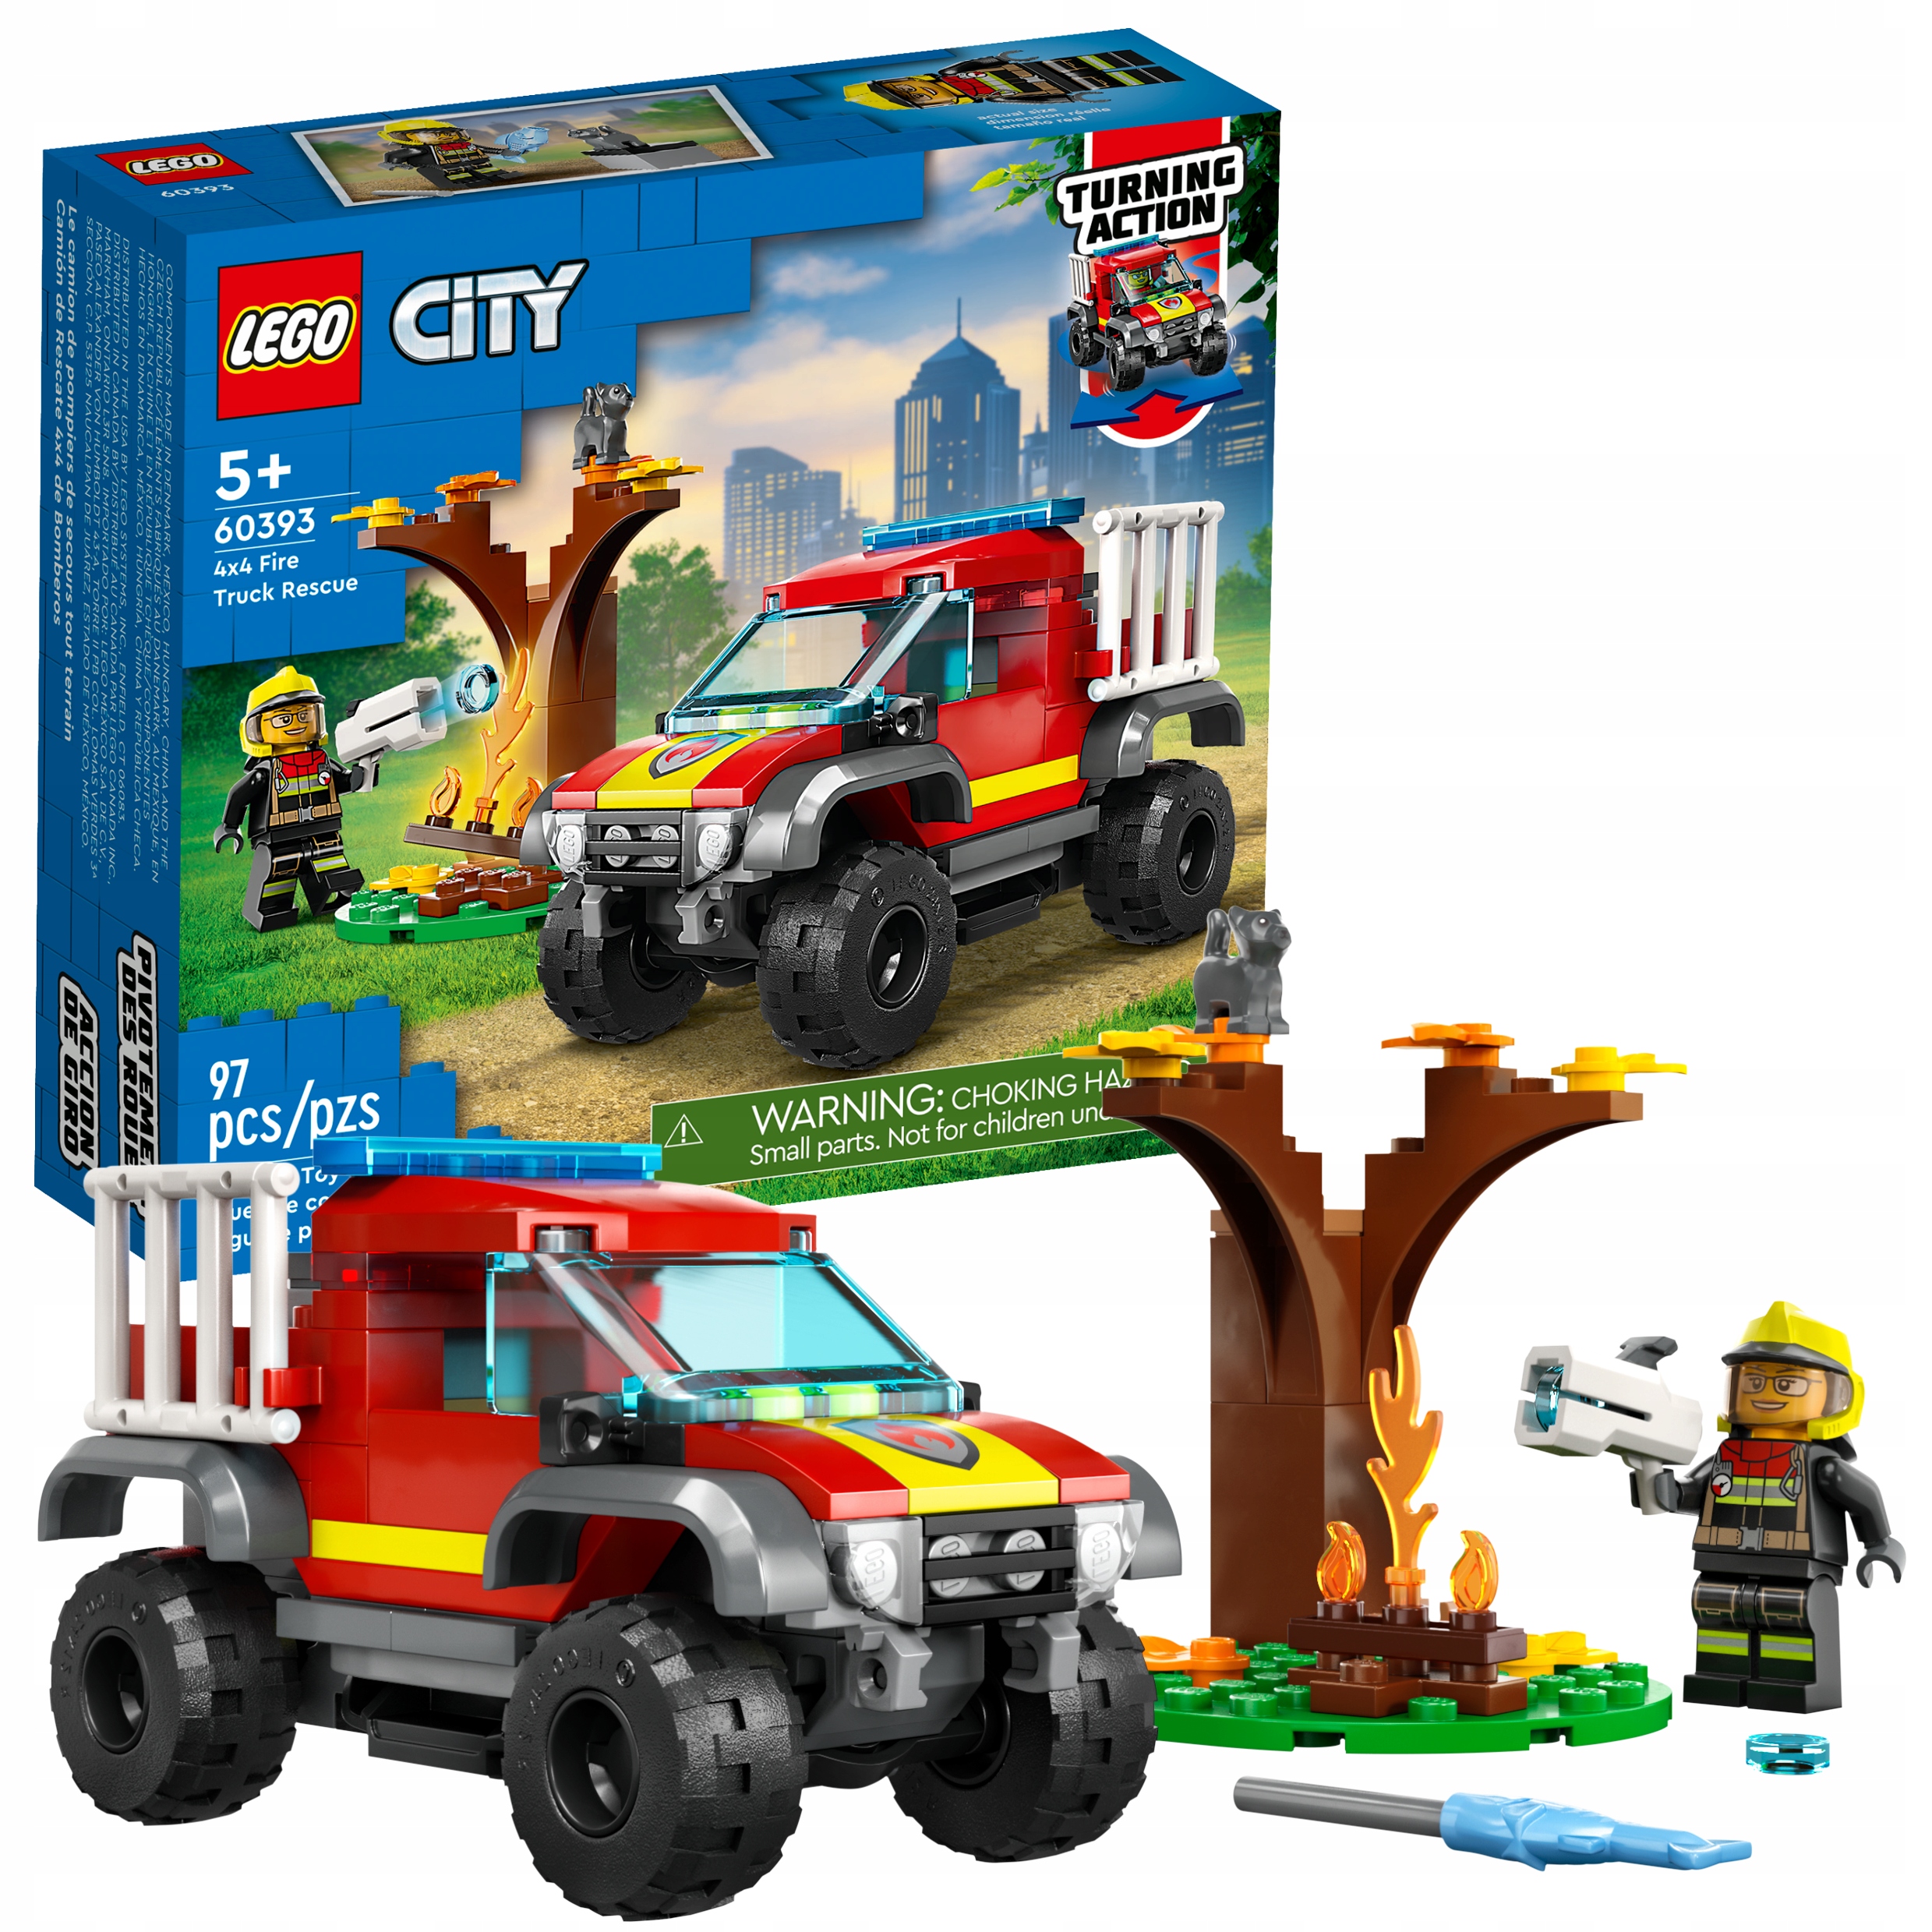 Конструктор LEGO City Спасательный пожарный внедорожник, 97 деталей, 60393 конструктор lego city спасательный пожарный внедорожник 97 деталей